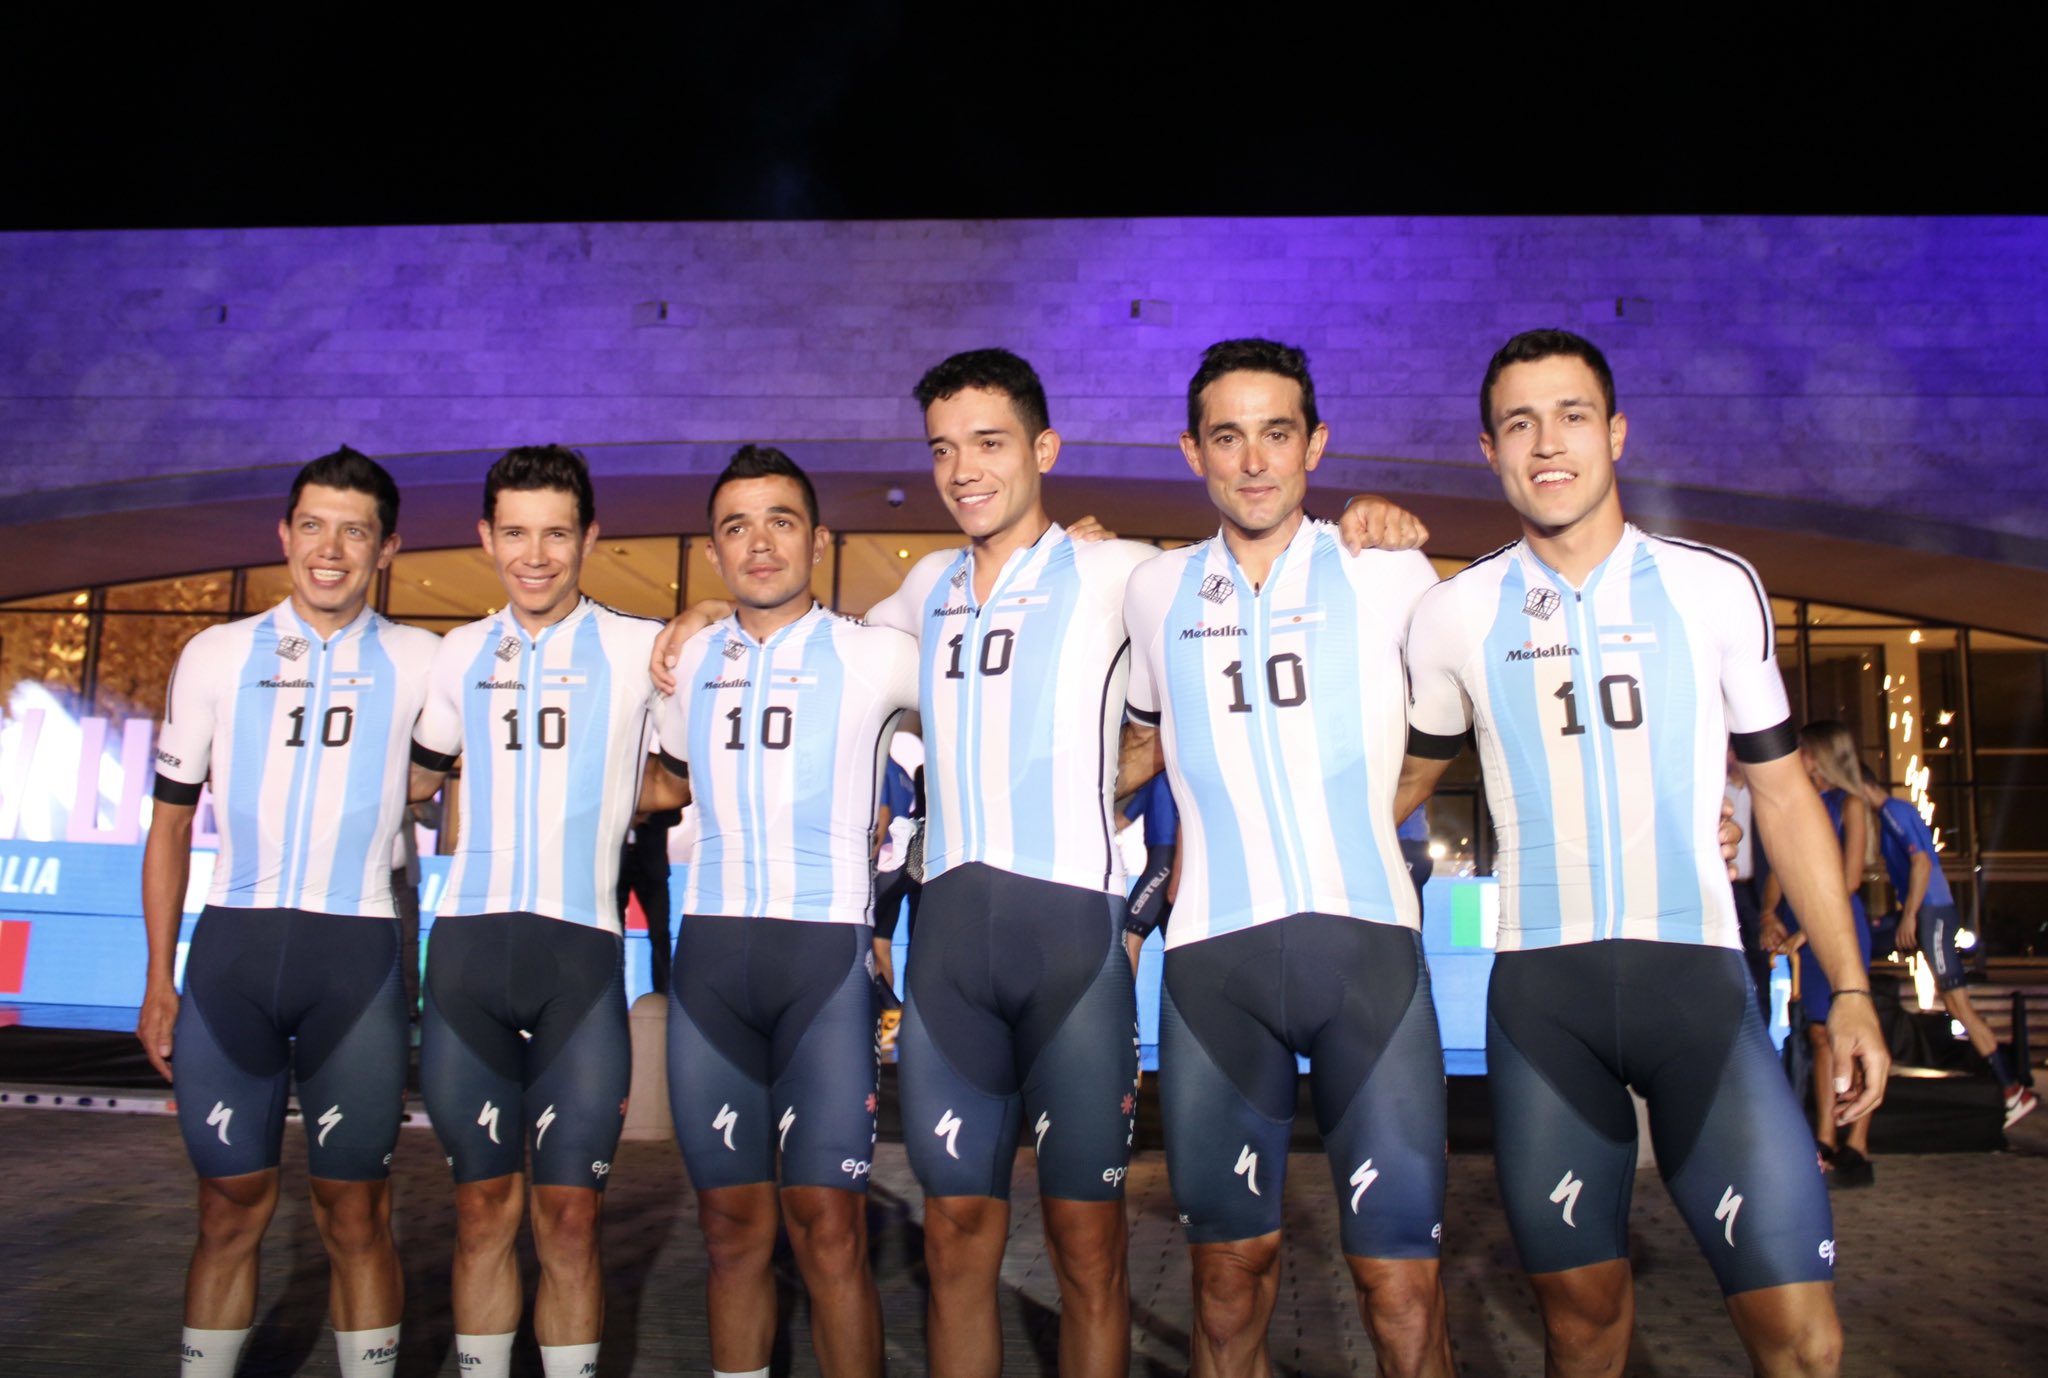 El homenaje del Team Medellín a Lionel Messi durante la presentación de la Vuelta a San Juan en Argentina